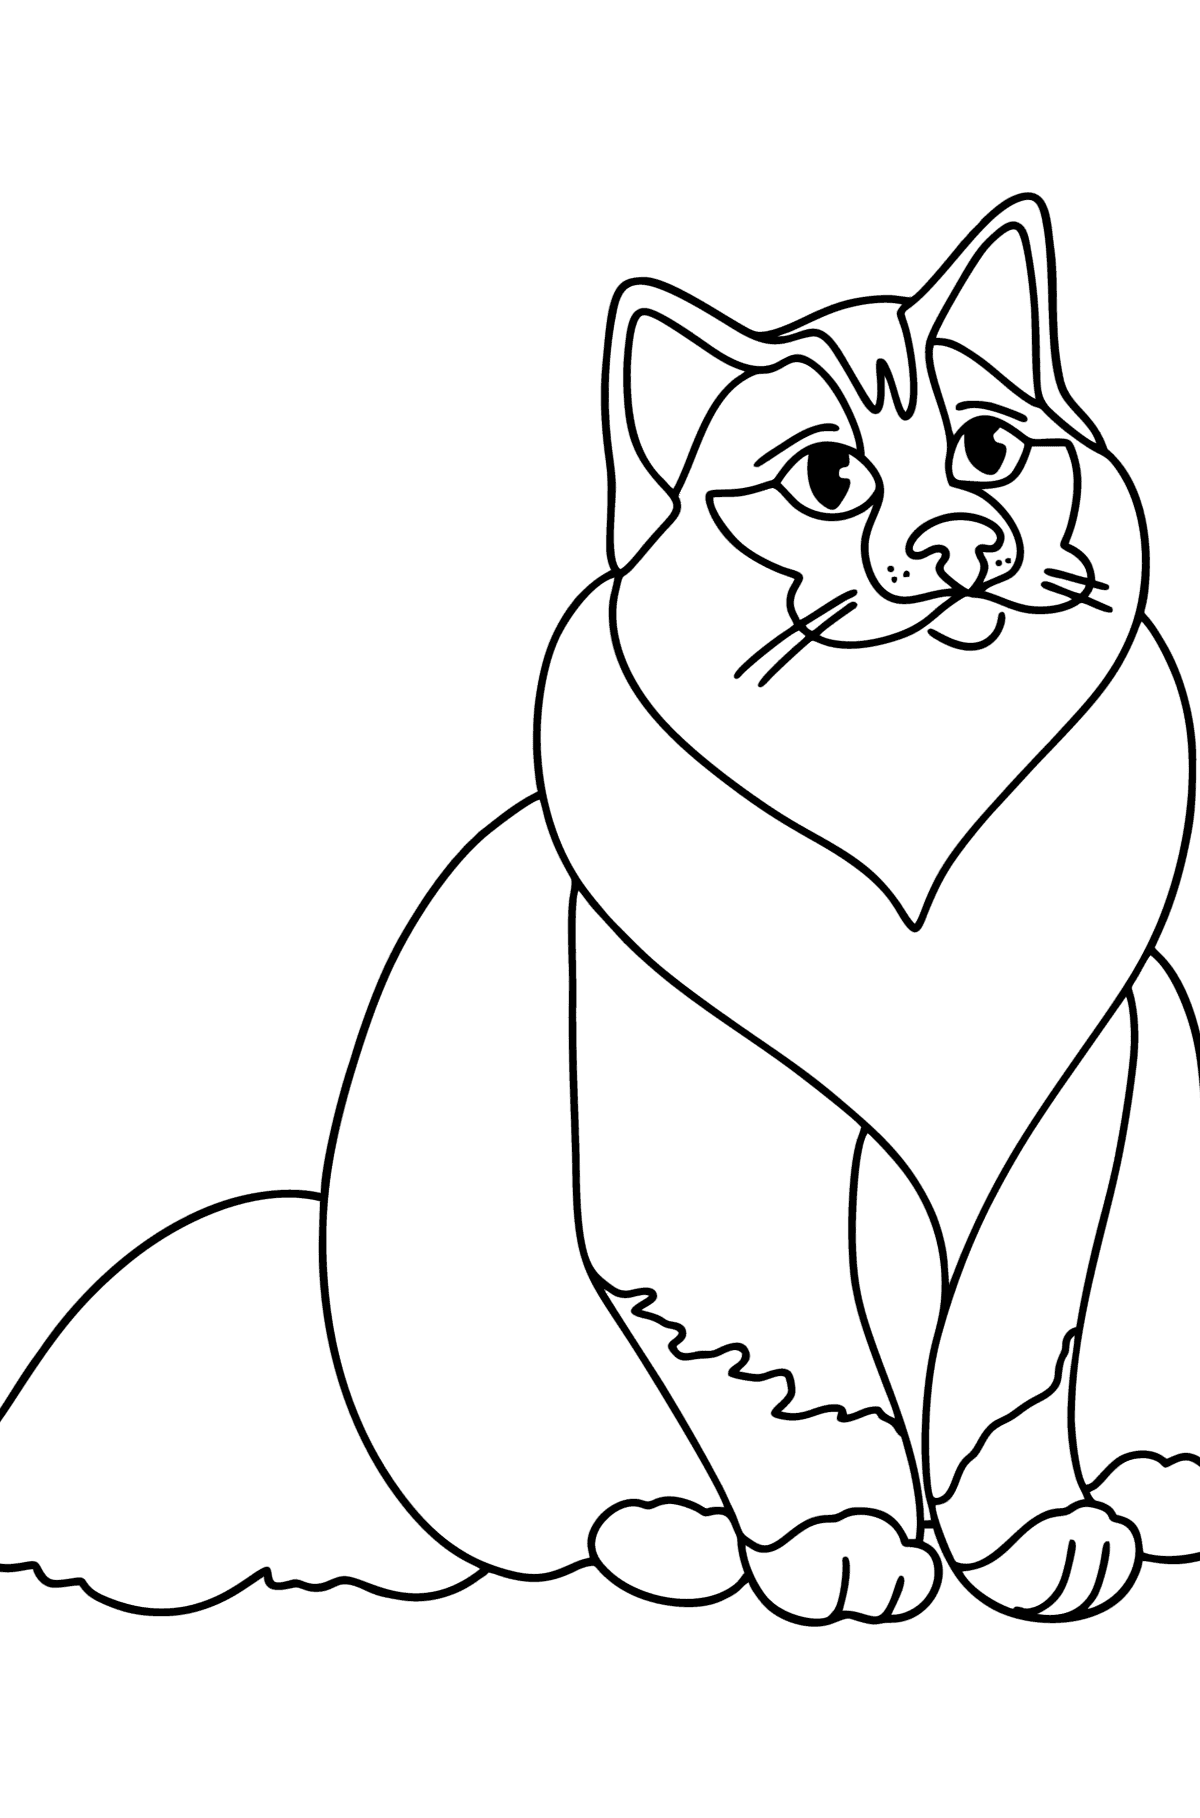 Раскраска Бирманская кошка - Картинки для Детей